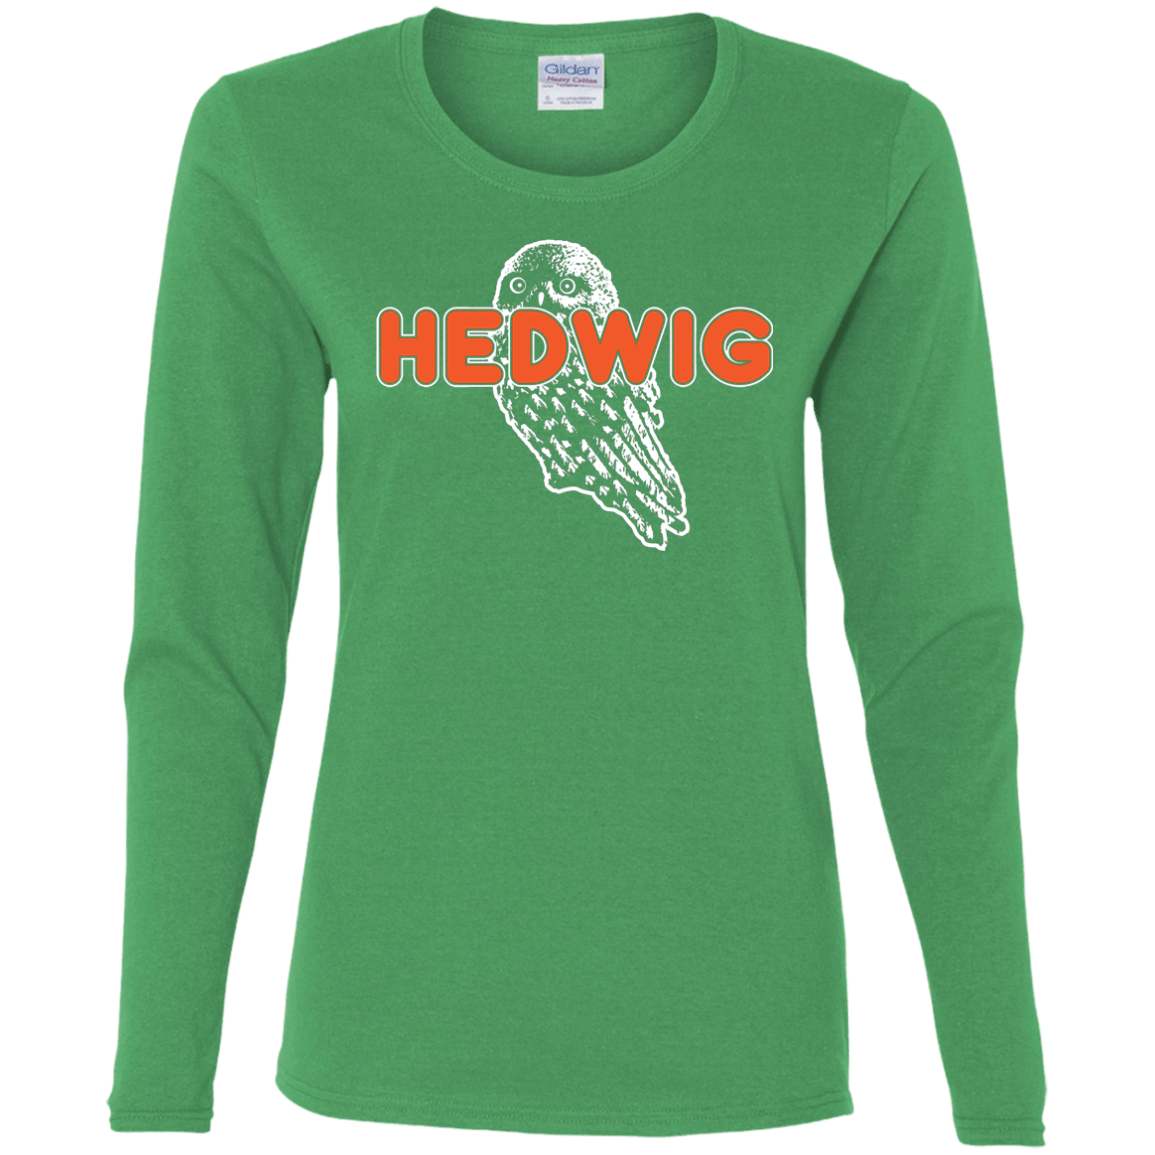 T-Shirts Irish Green / S Hedwig Women's Long Sleeve T-Shirt